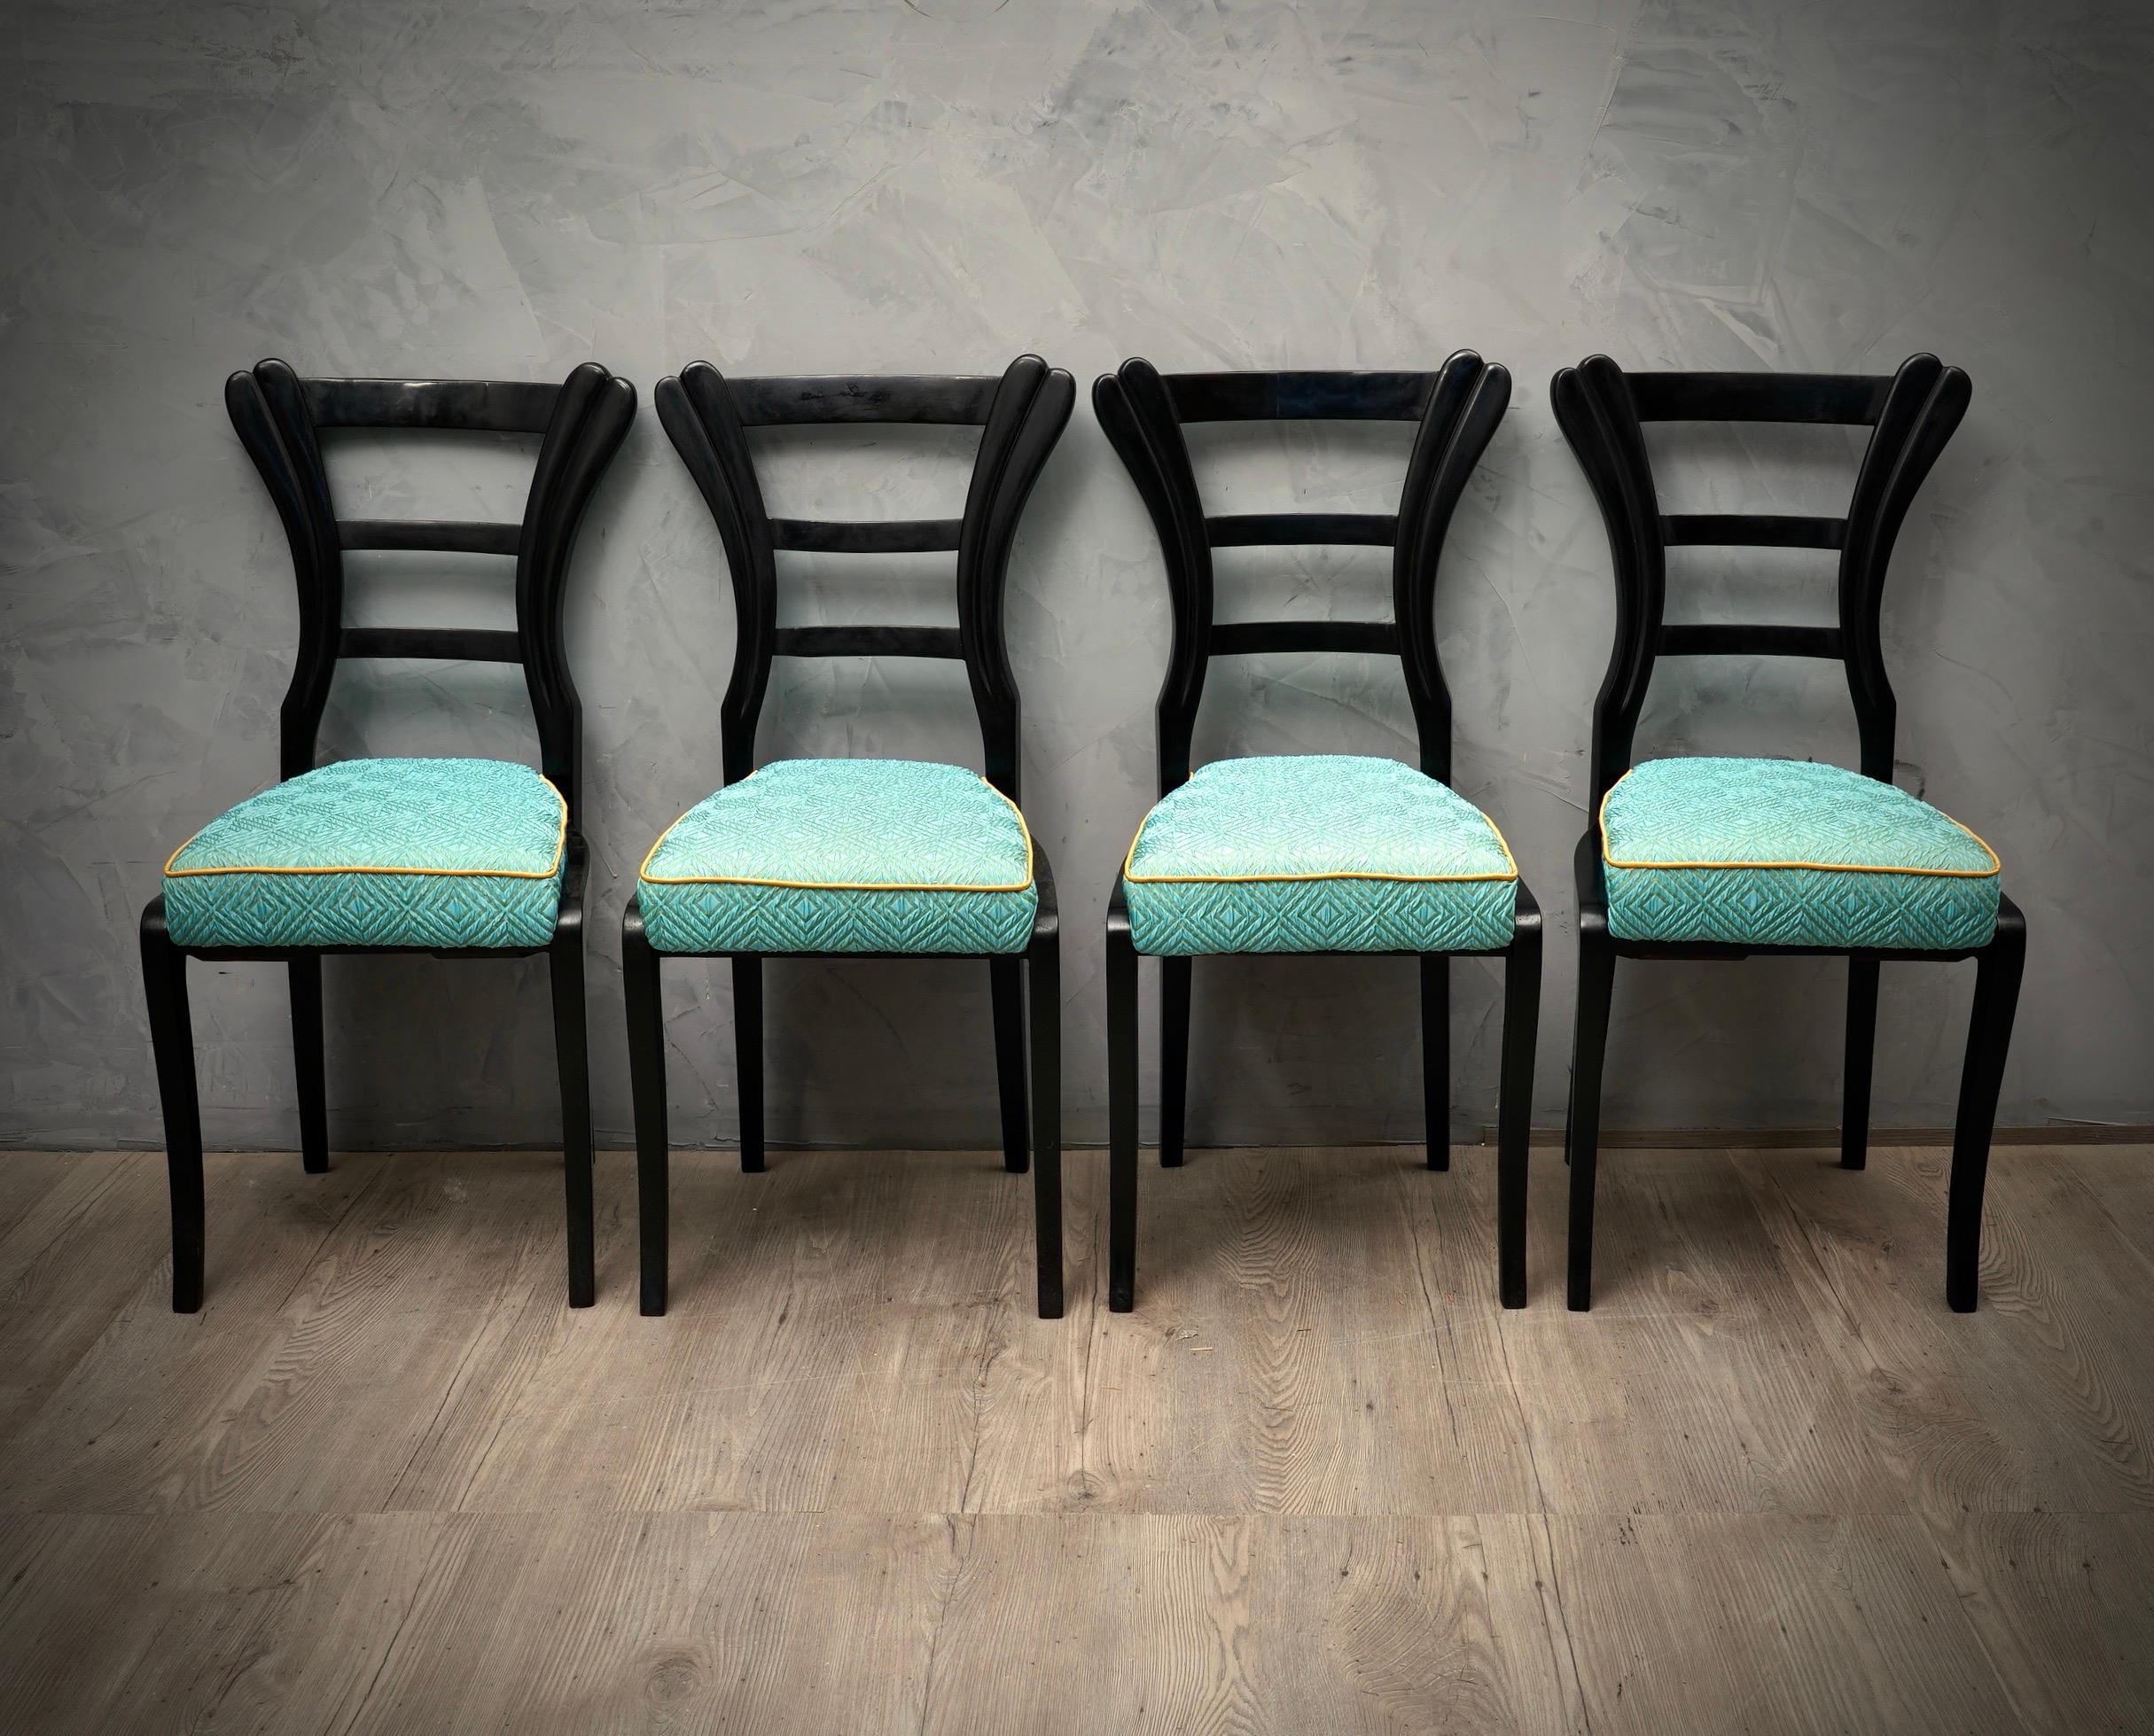 Quatre belles chaises Biedermeier au design inimitable, de la gomme-laque noire pour la structure et une belle soie bleue pour l'assise.

Les chaises sont polies à la gomme-laque noire, ont un très beau design, des pieds avant en sabre et un dossier